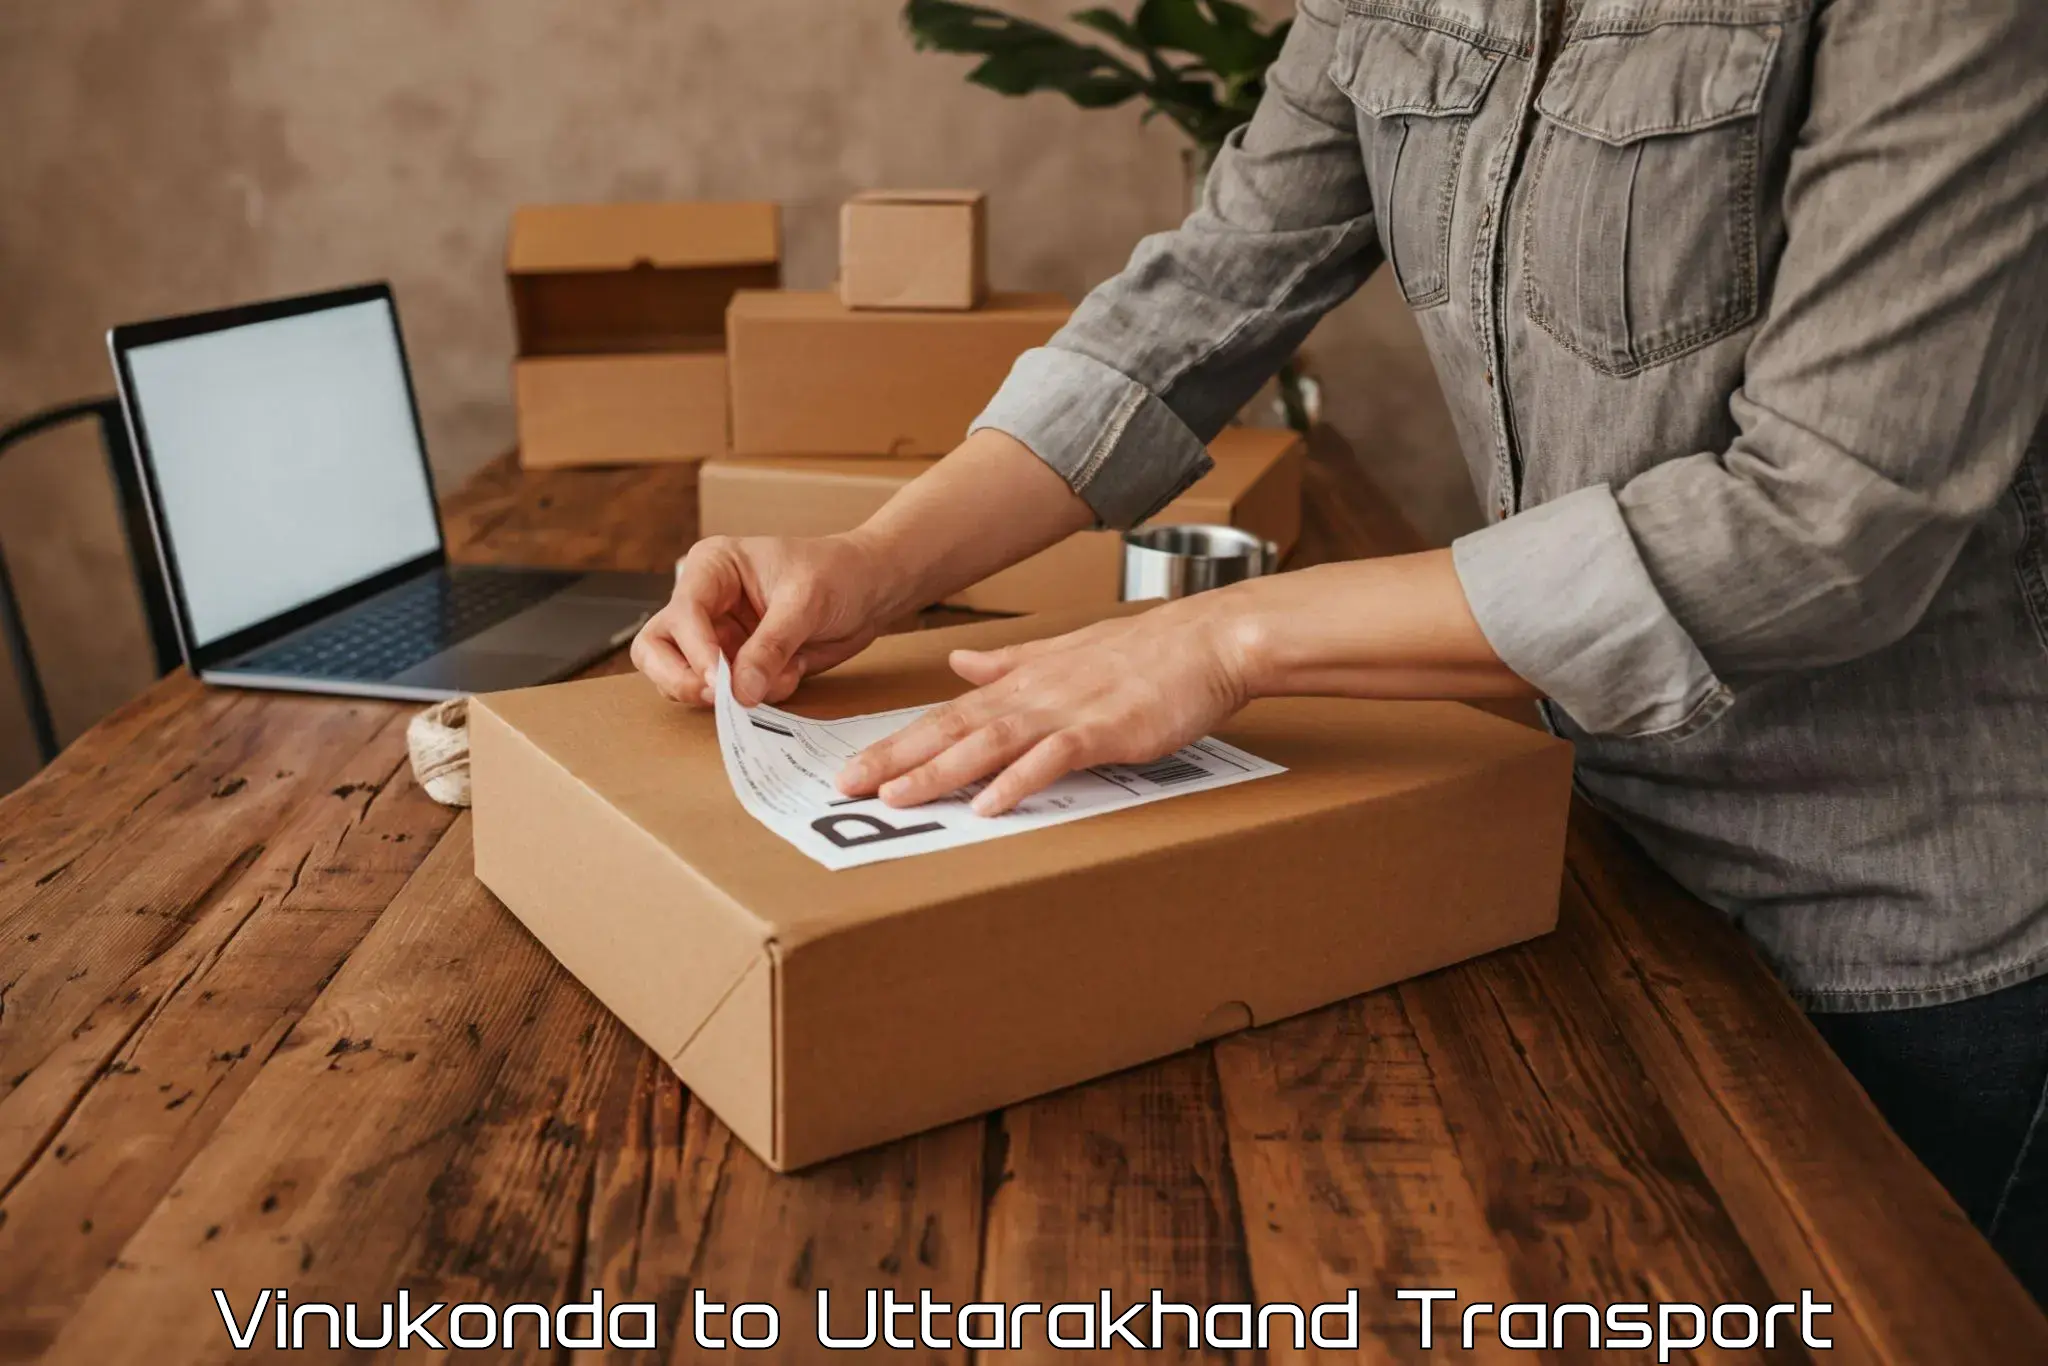 Road transport online services Vinukonda to Dwarahat